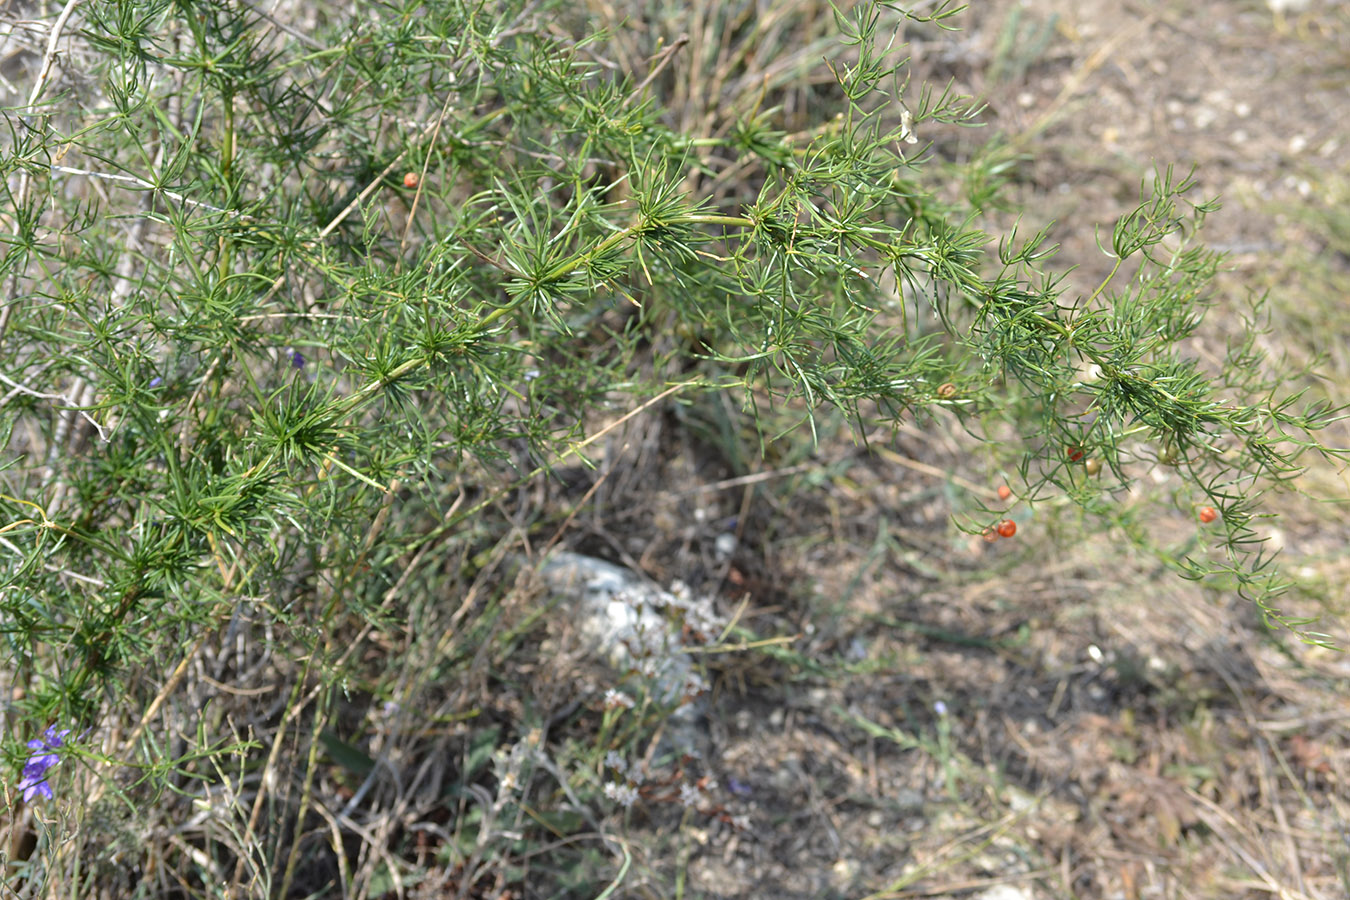 Image of Asparagus verticillatus specimen.